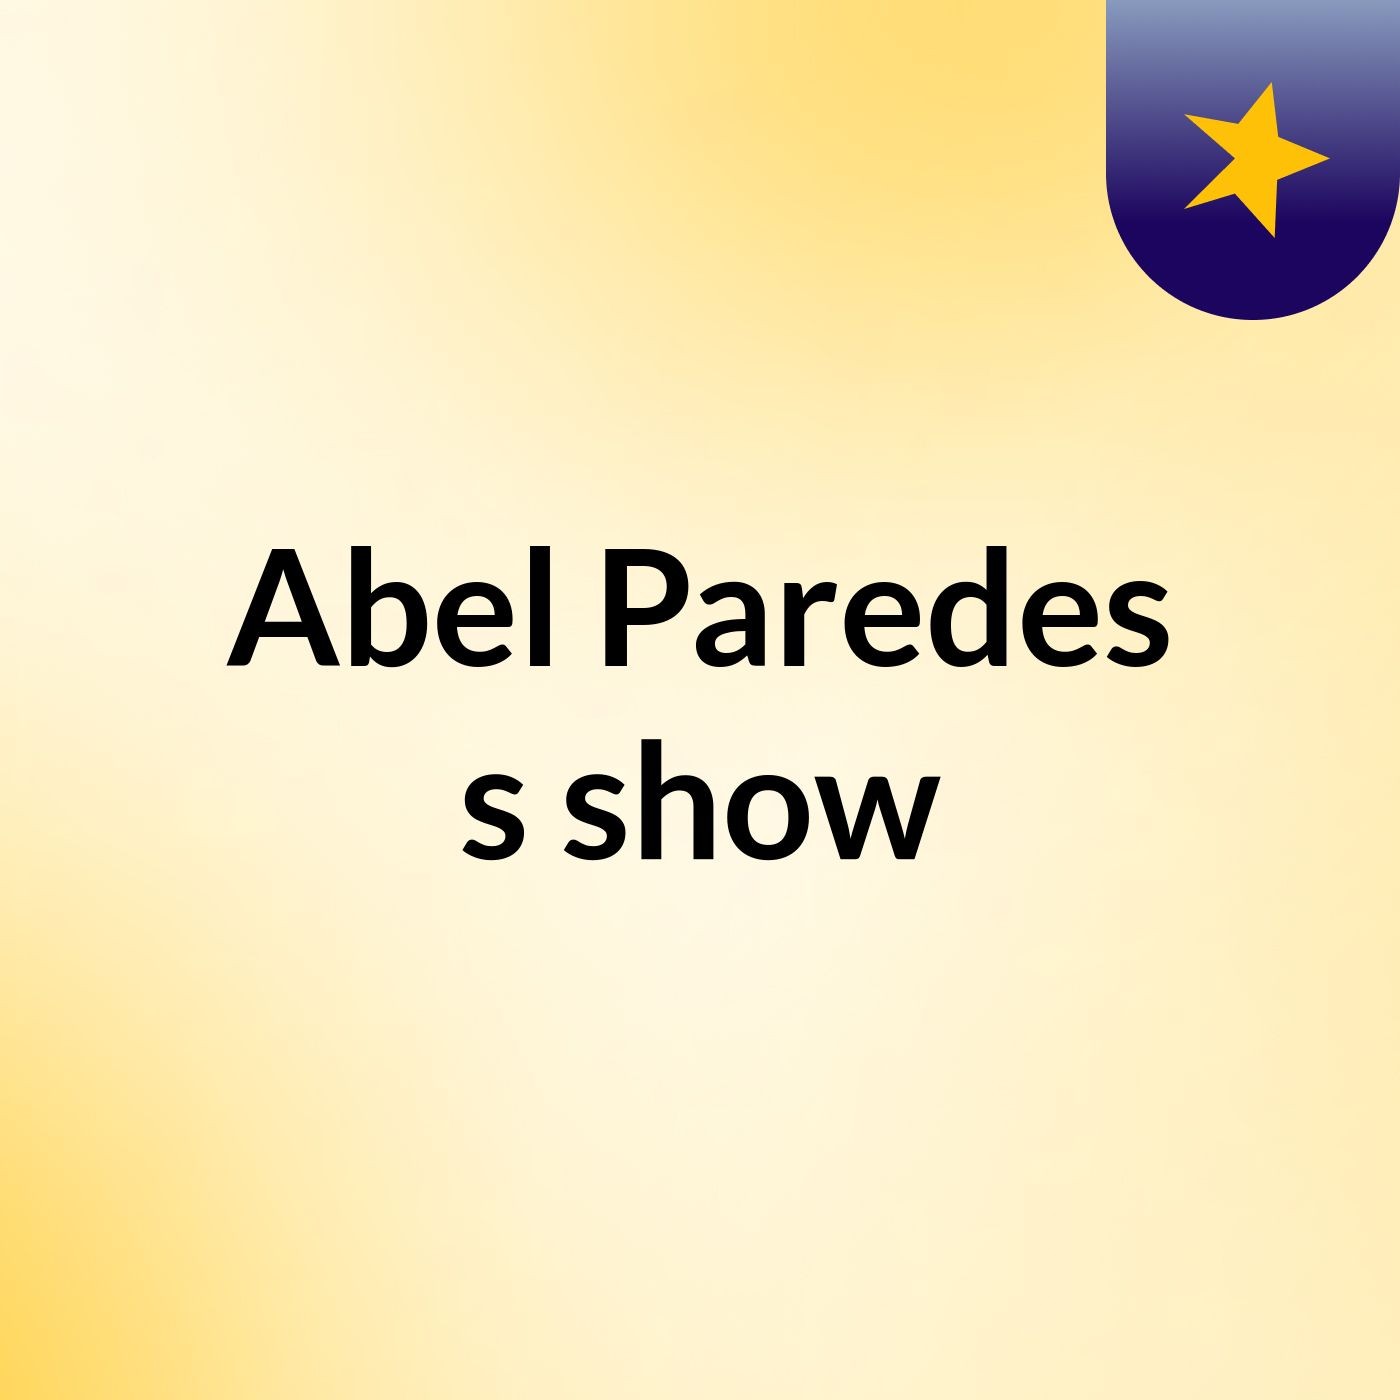 Abel Paredes's show